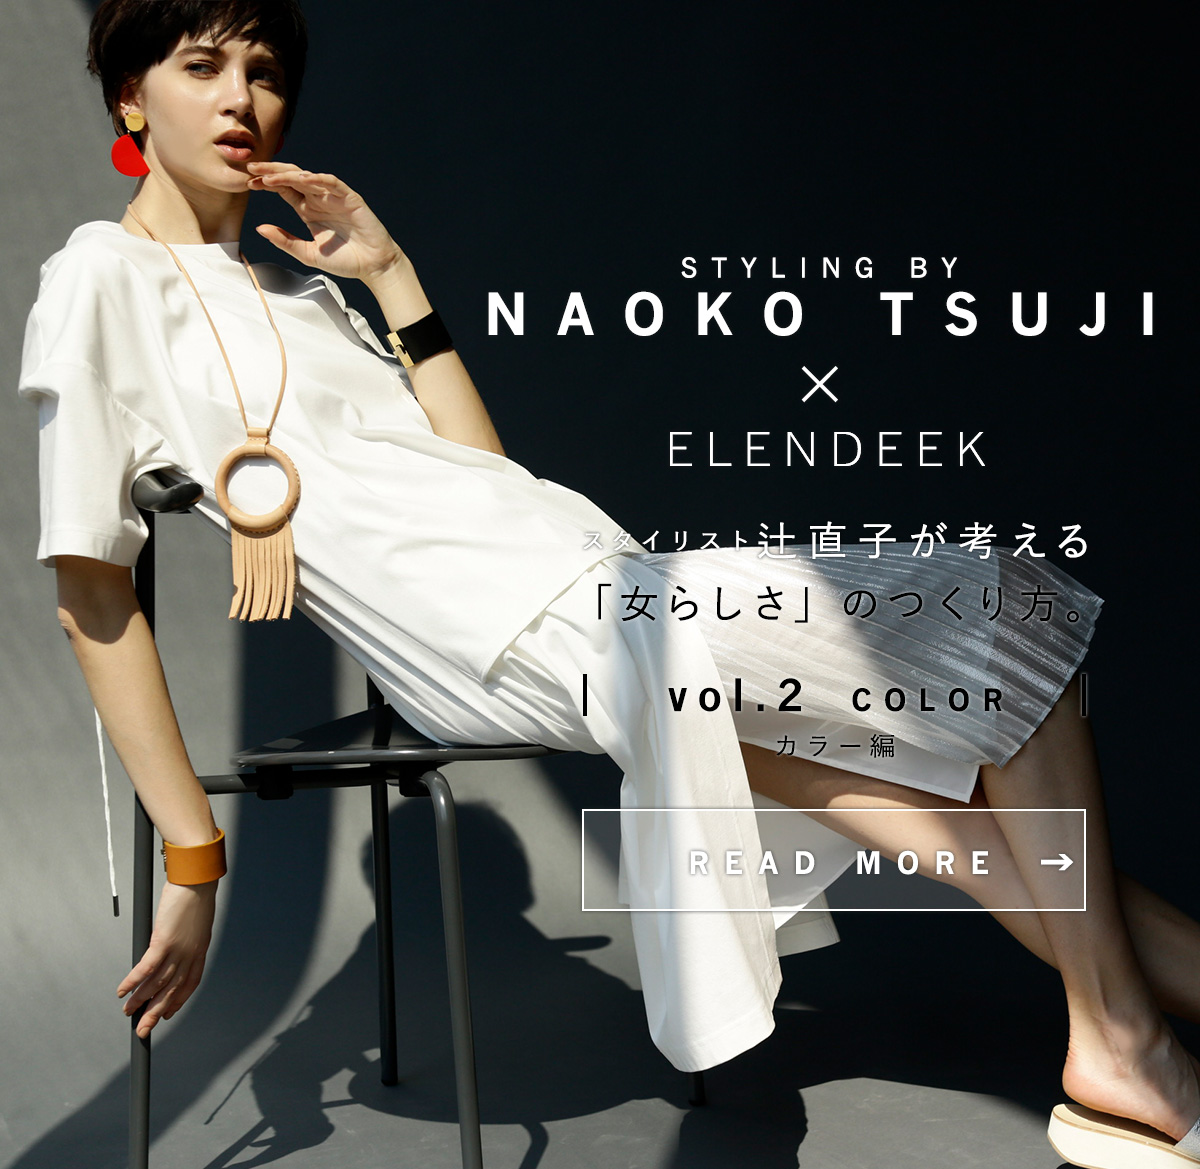 STYLING BY NAOKO TUSJI x ELENDEEK